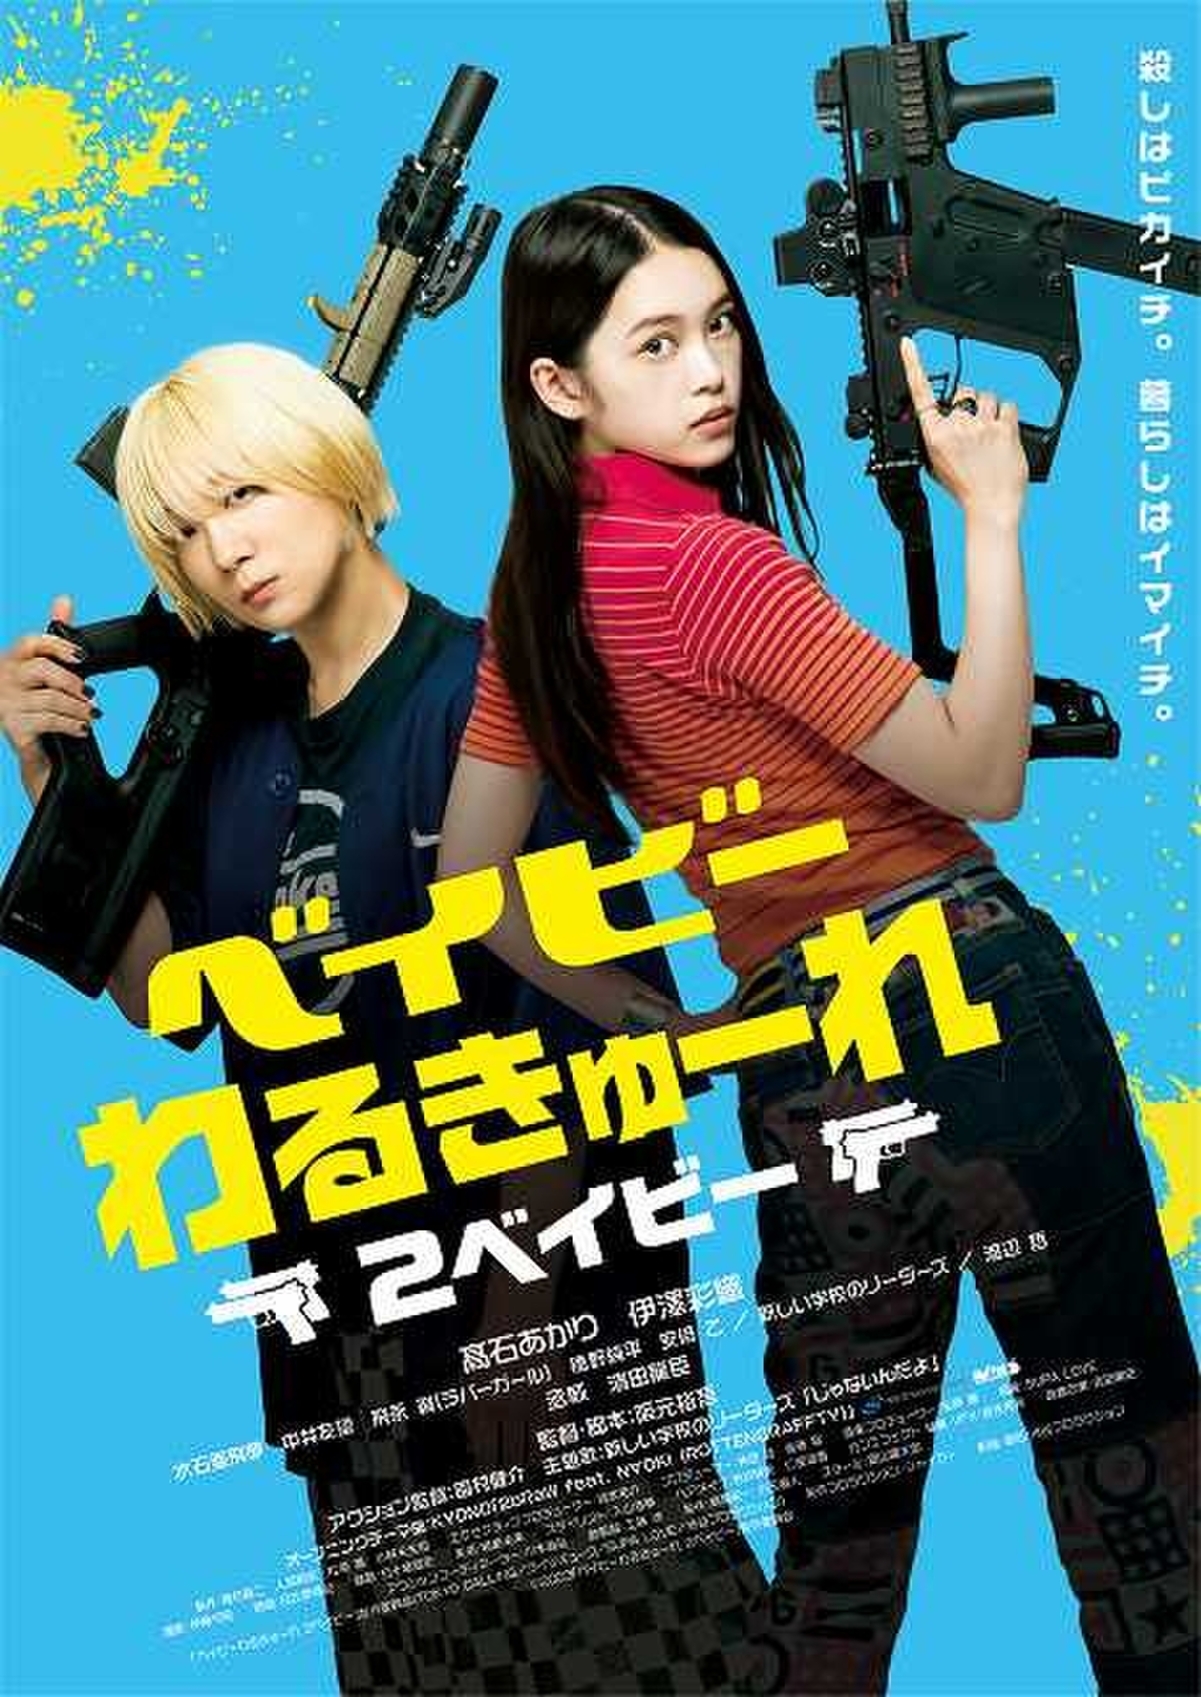 ベイビーわるきゅーれ 』Blu-ray初回限定生産版 Tシャツ - 日本映画